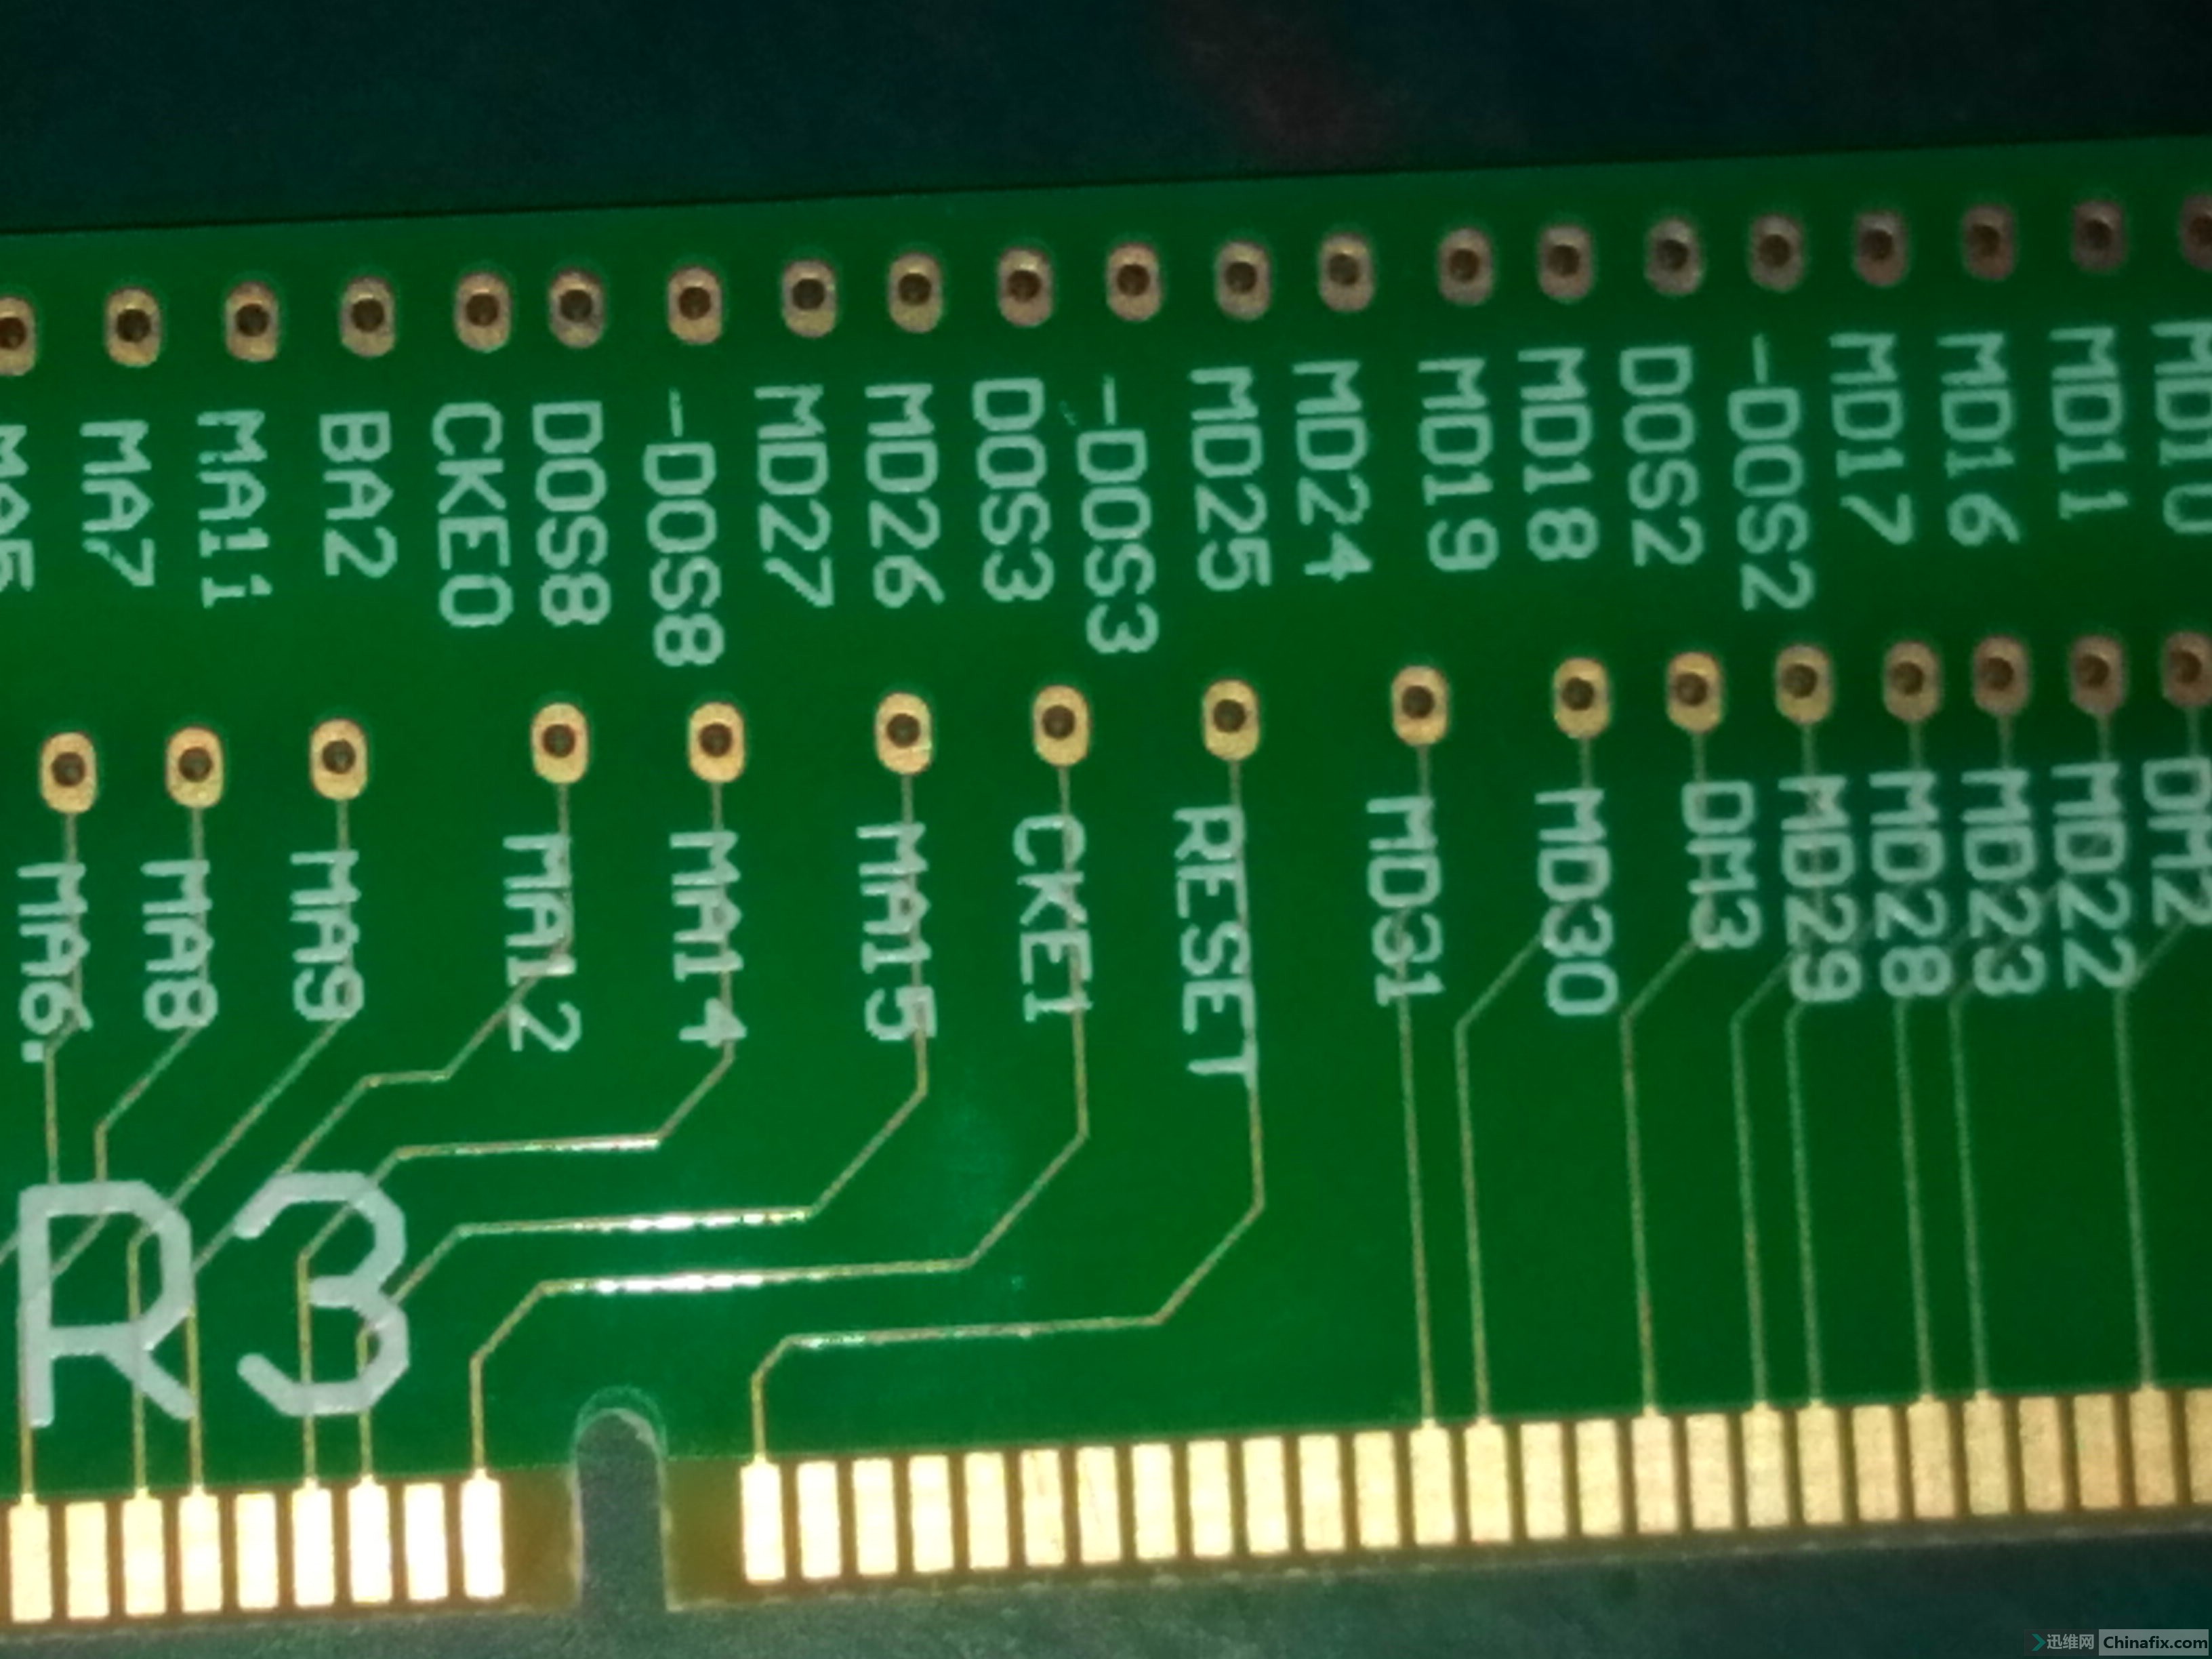 首次目睹 DDR3 内存插槽实物图，感受电脑关键部件的魅力